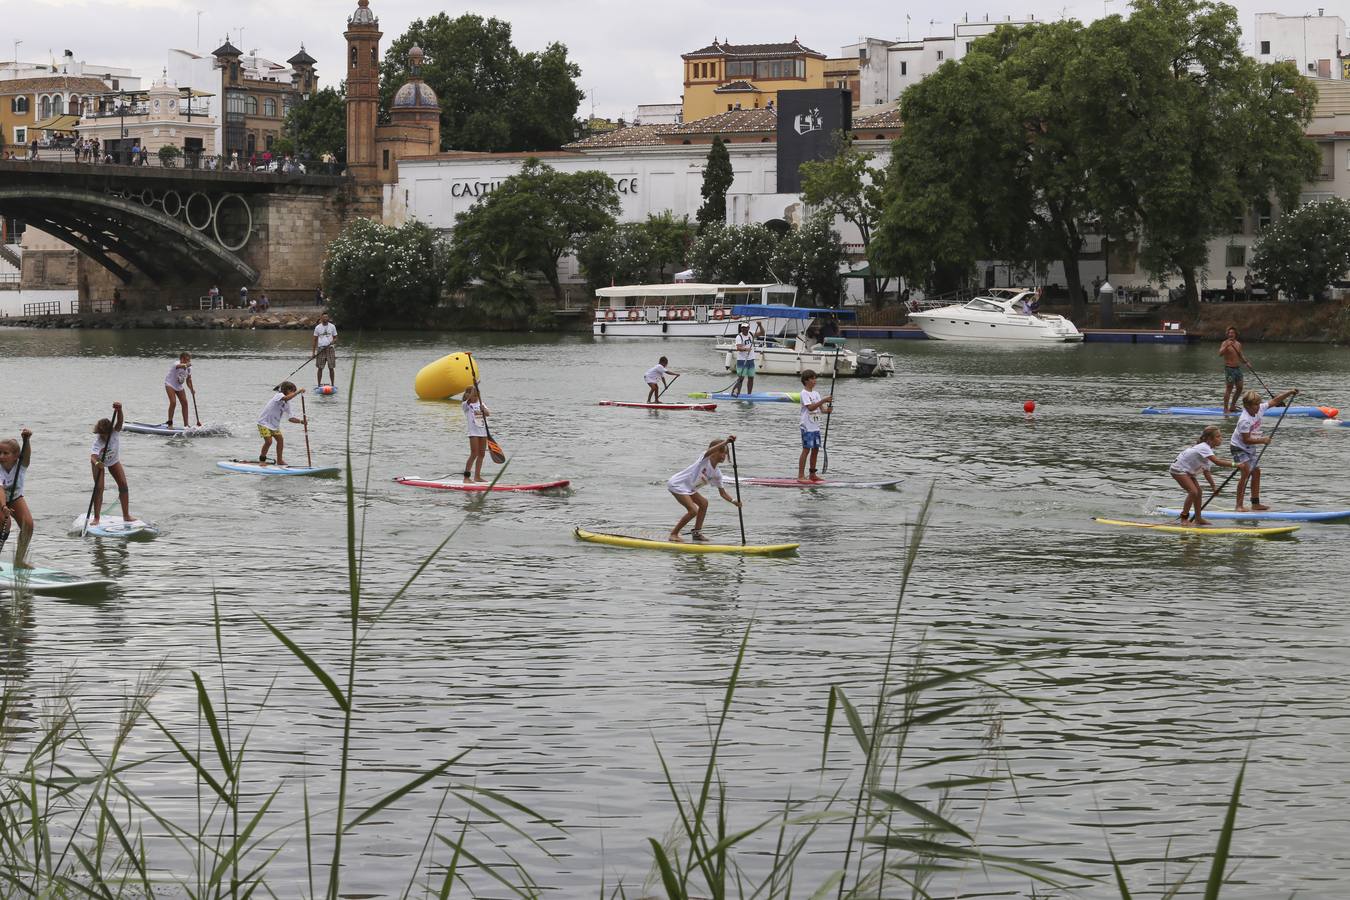 La Tercera Edición del Festival de paddle surf Sevilla SUP, en imágenes